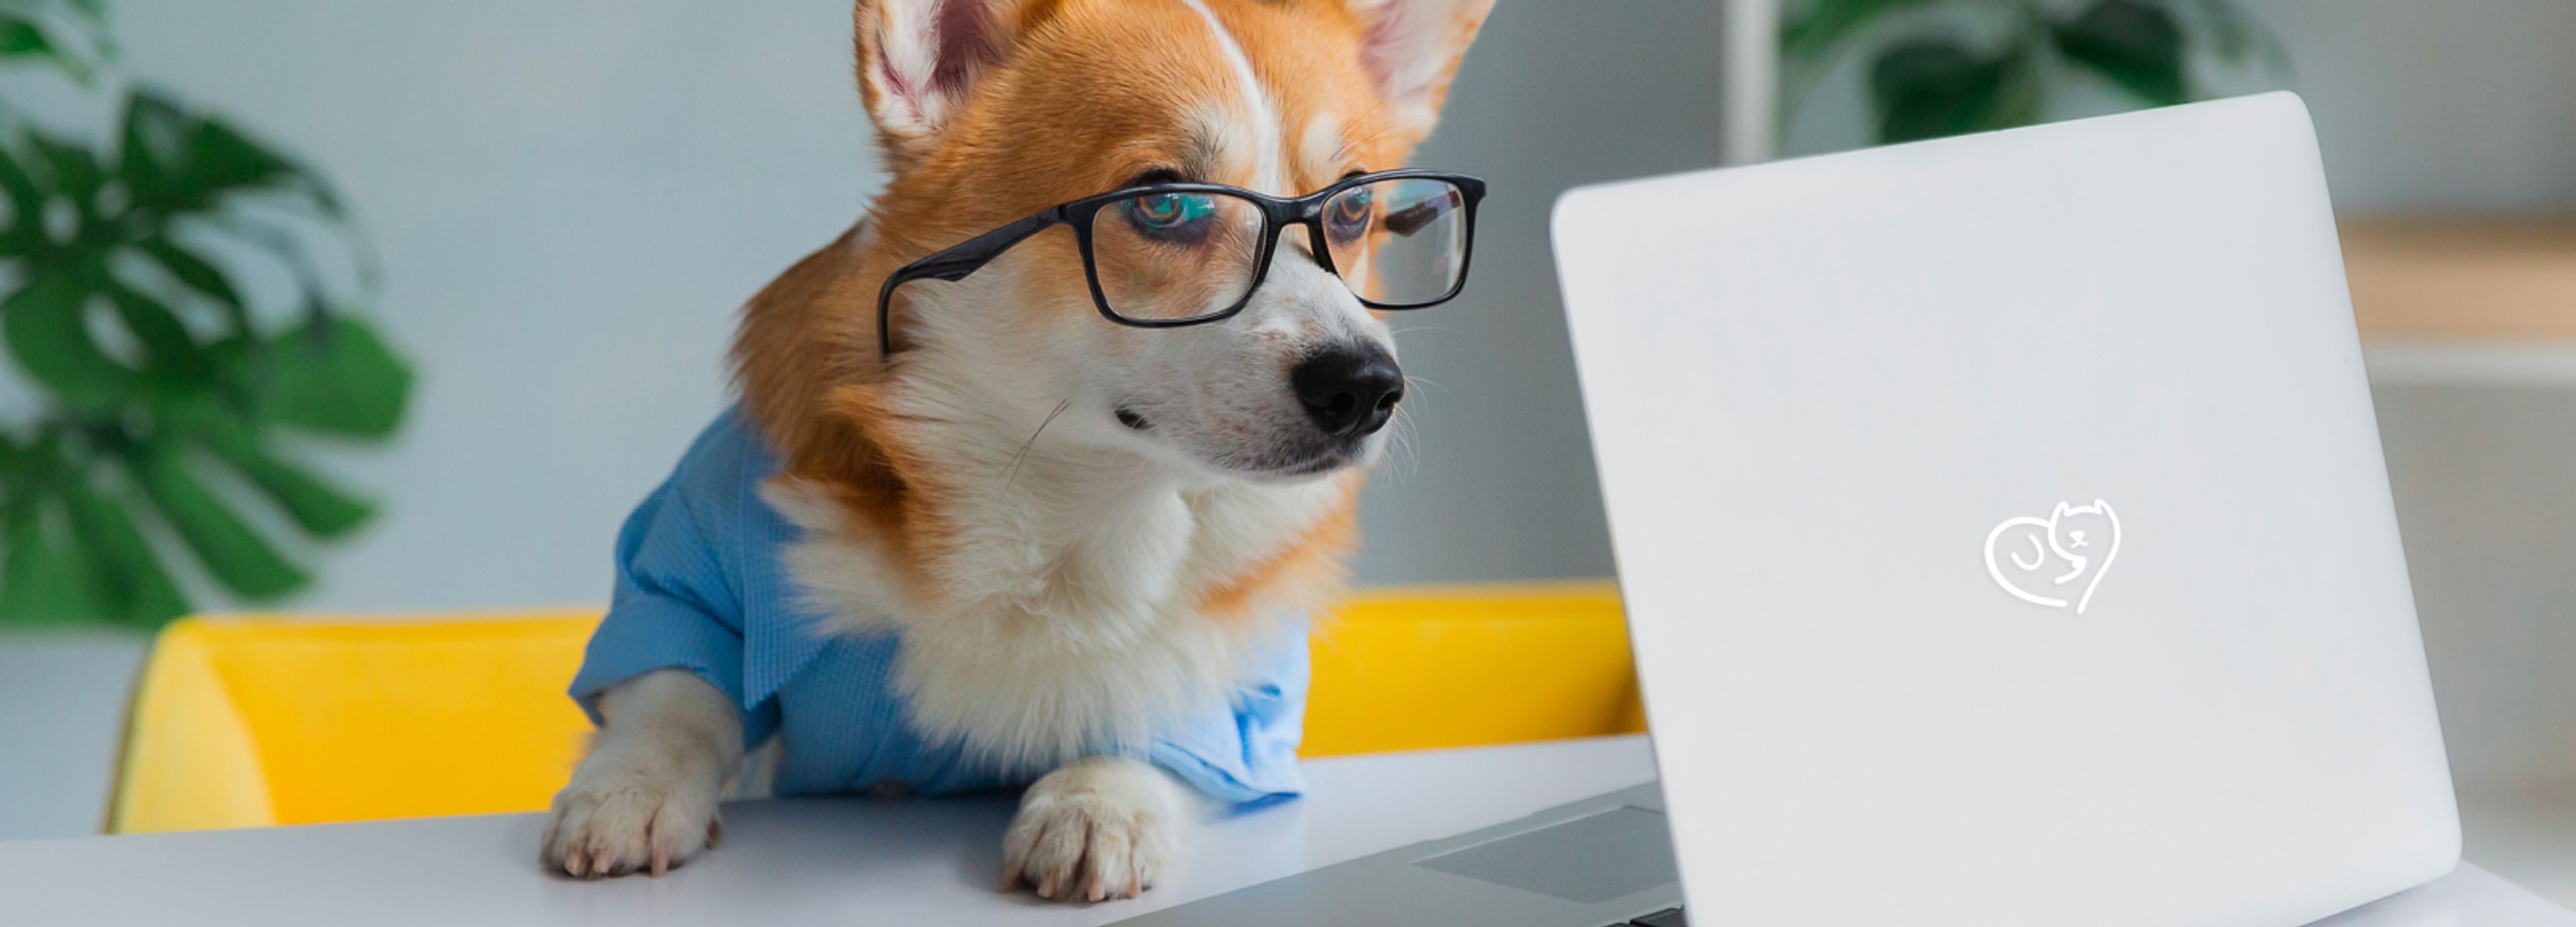 cane con occhiali del guarda pc